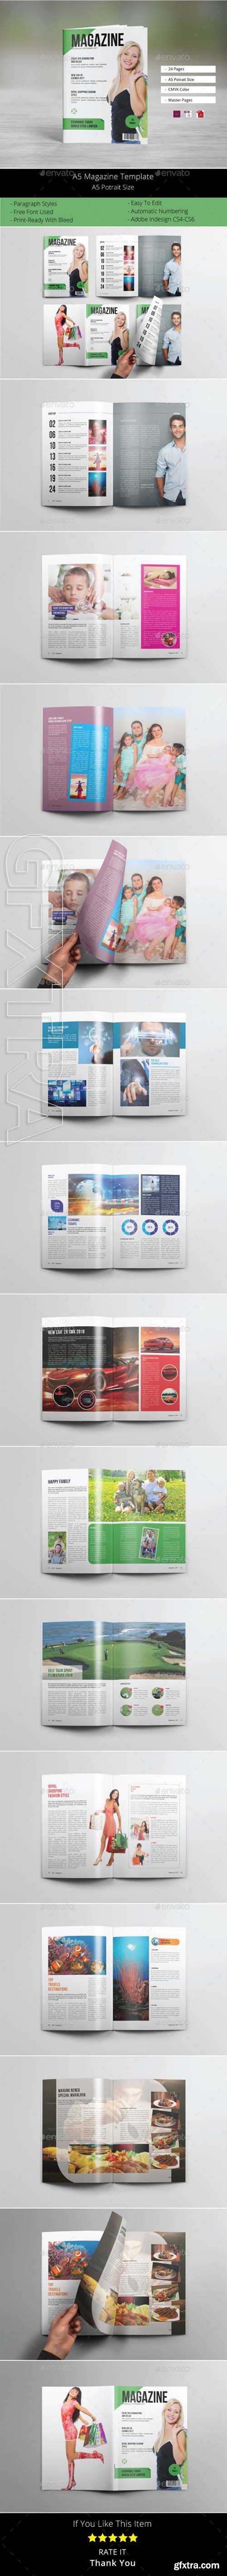 GraphicRiver - A5 Magazine Template 20464274